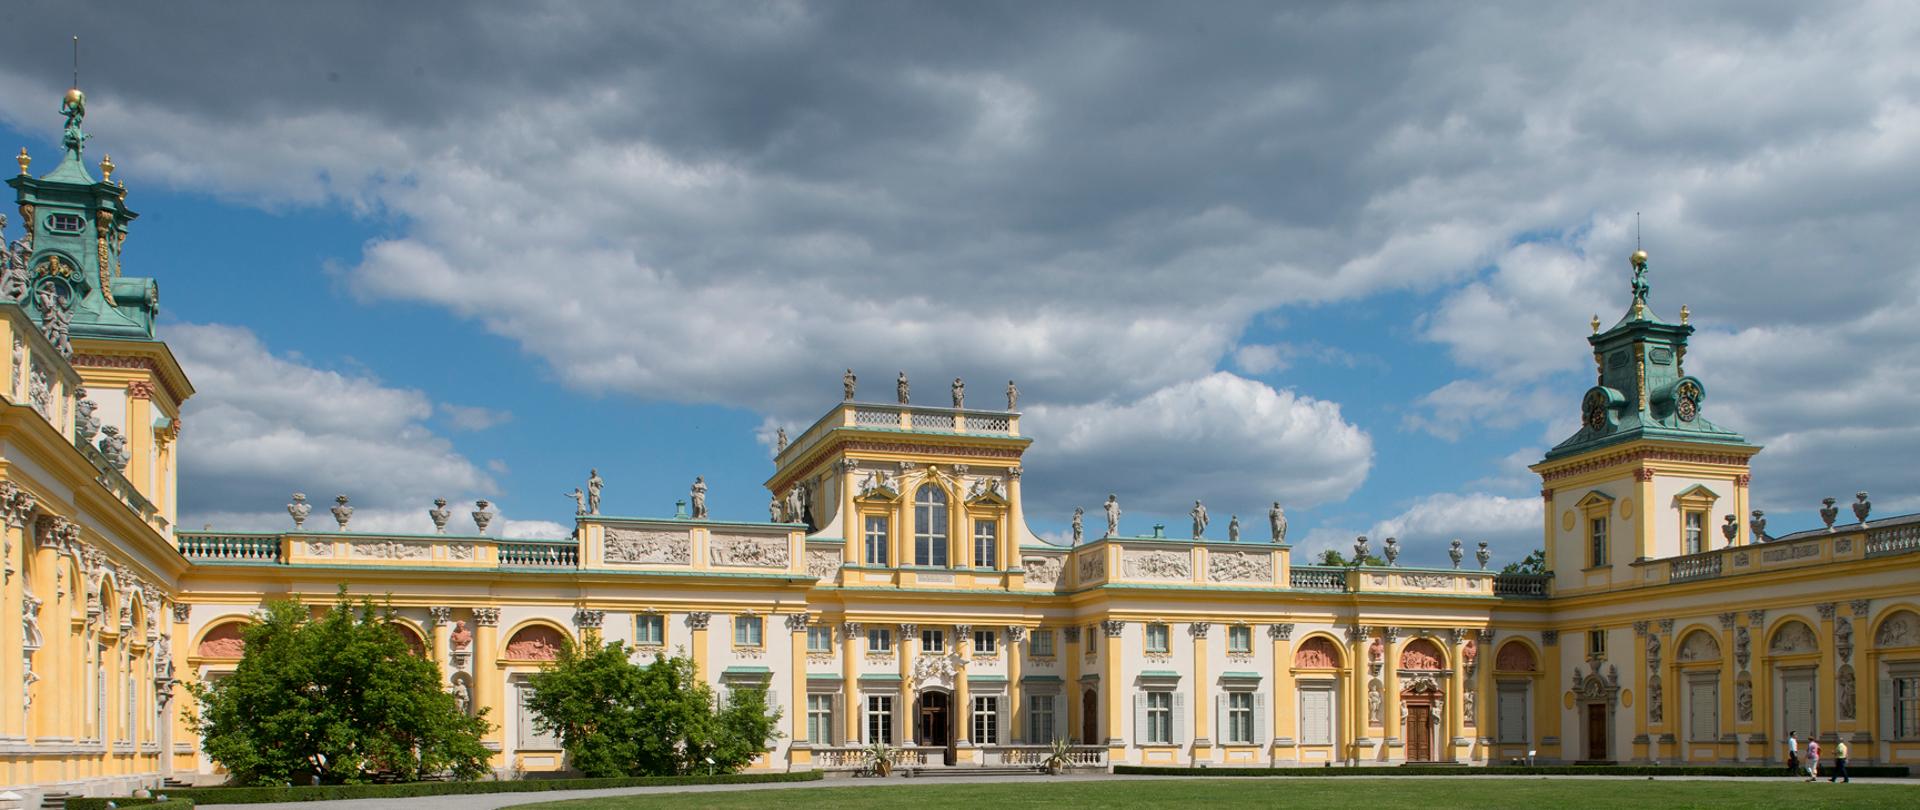 Muzeum Pałacu Króla Jana III w Wilanowie, fot. W. Holnicki - Pałac od strony Dziedzińca Głównego